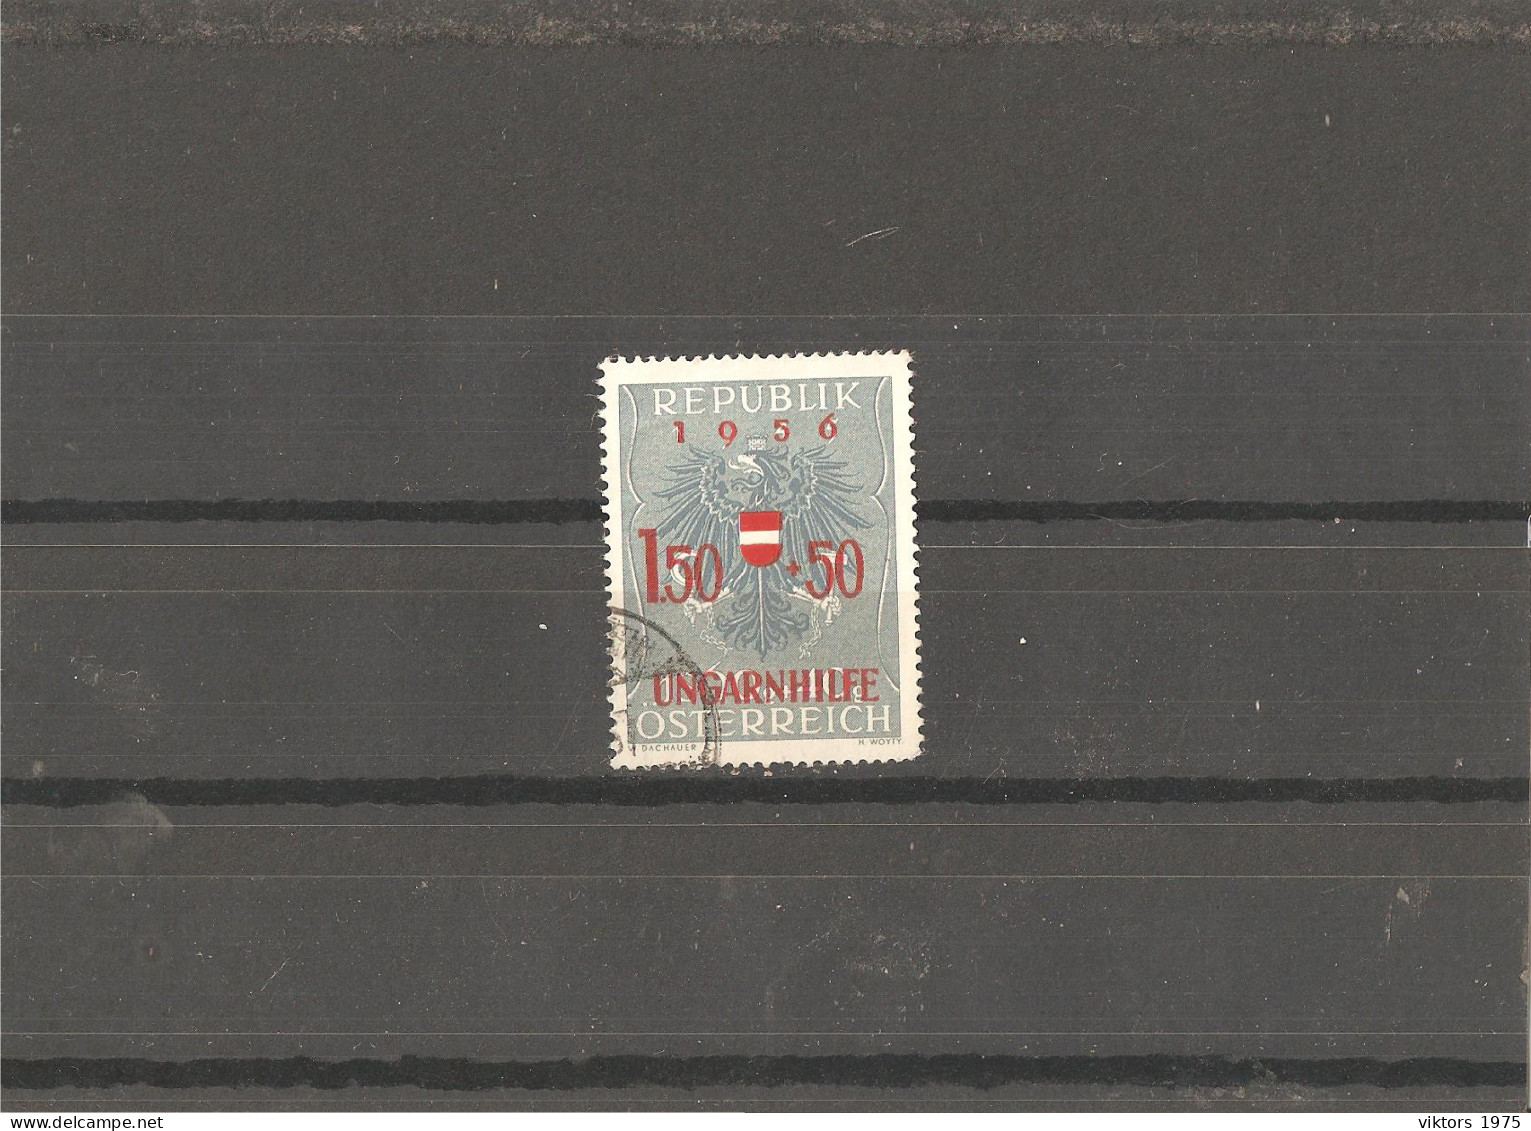 Used Stamp Nr.1030 In MICHEL Catalog - Usati